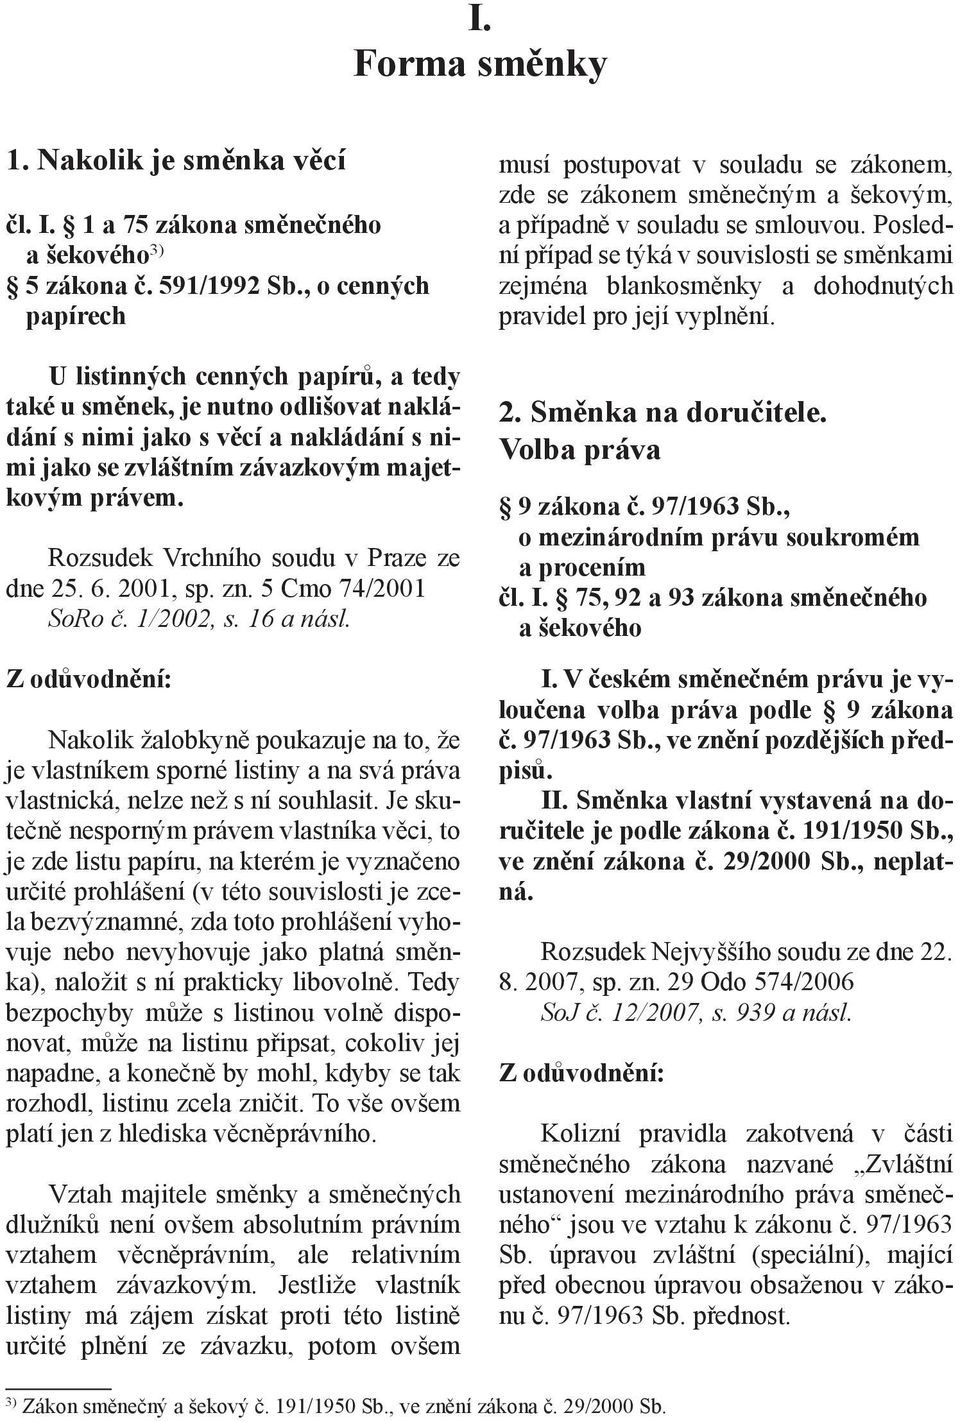 Rozsudek Vrchního soudu v Praze ze dne 25. 6. 2001, sp. zn. 5 Cmo 74/2001 SoRo č. 1/2002, s. 16 a násl.